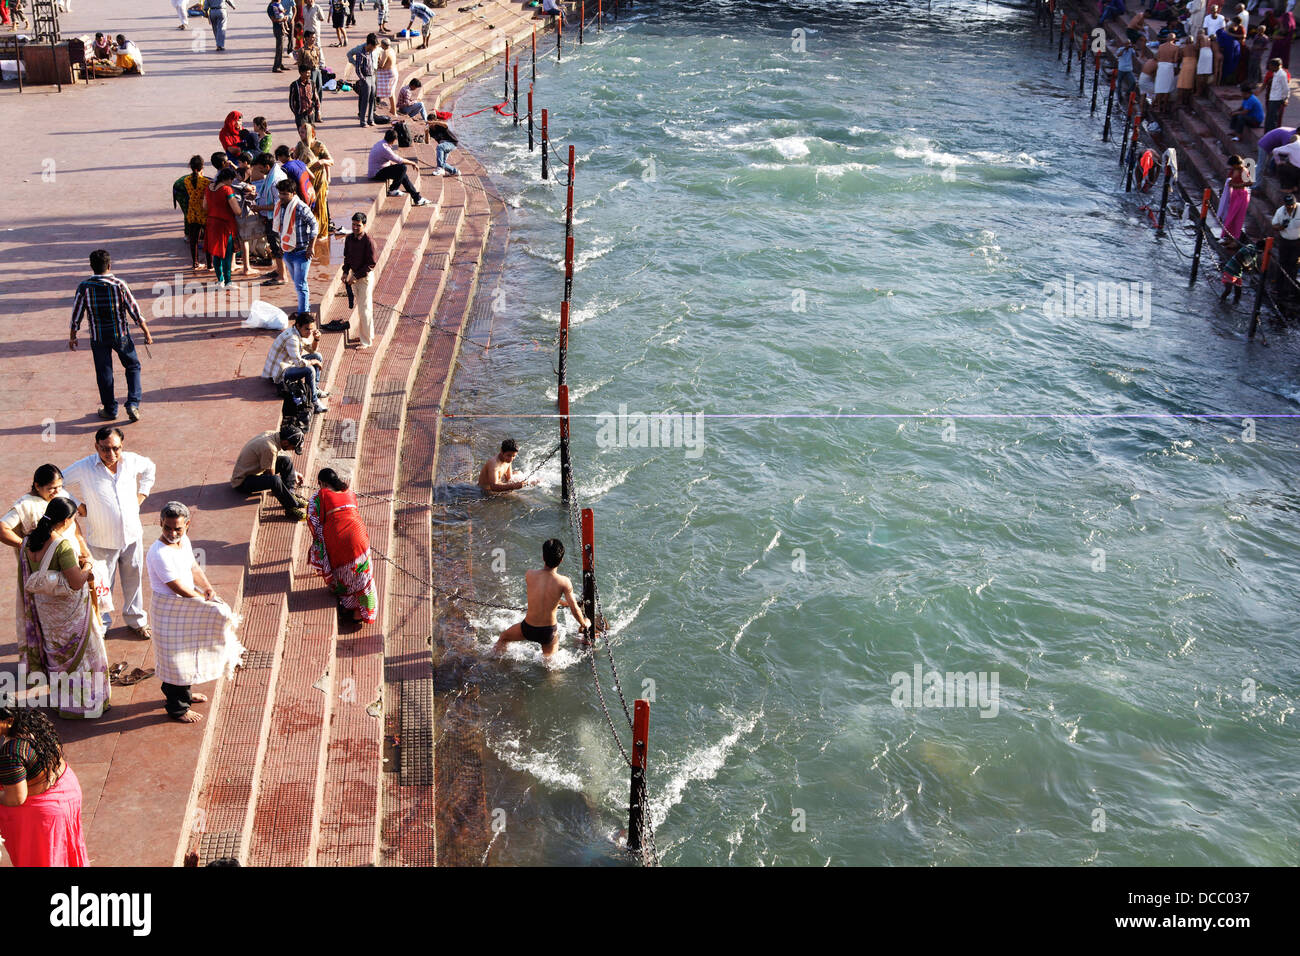 Religiöse Anhänger Baden sich in schnellen fließenden Gewässern des Ganges in Haridwar, Indien. Stockfoto